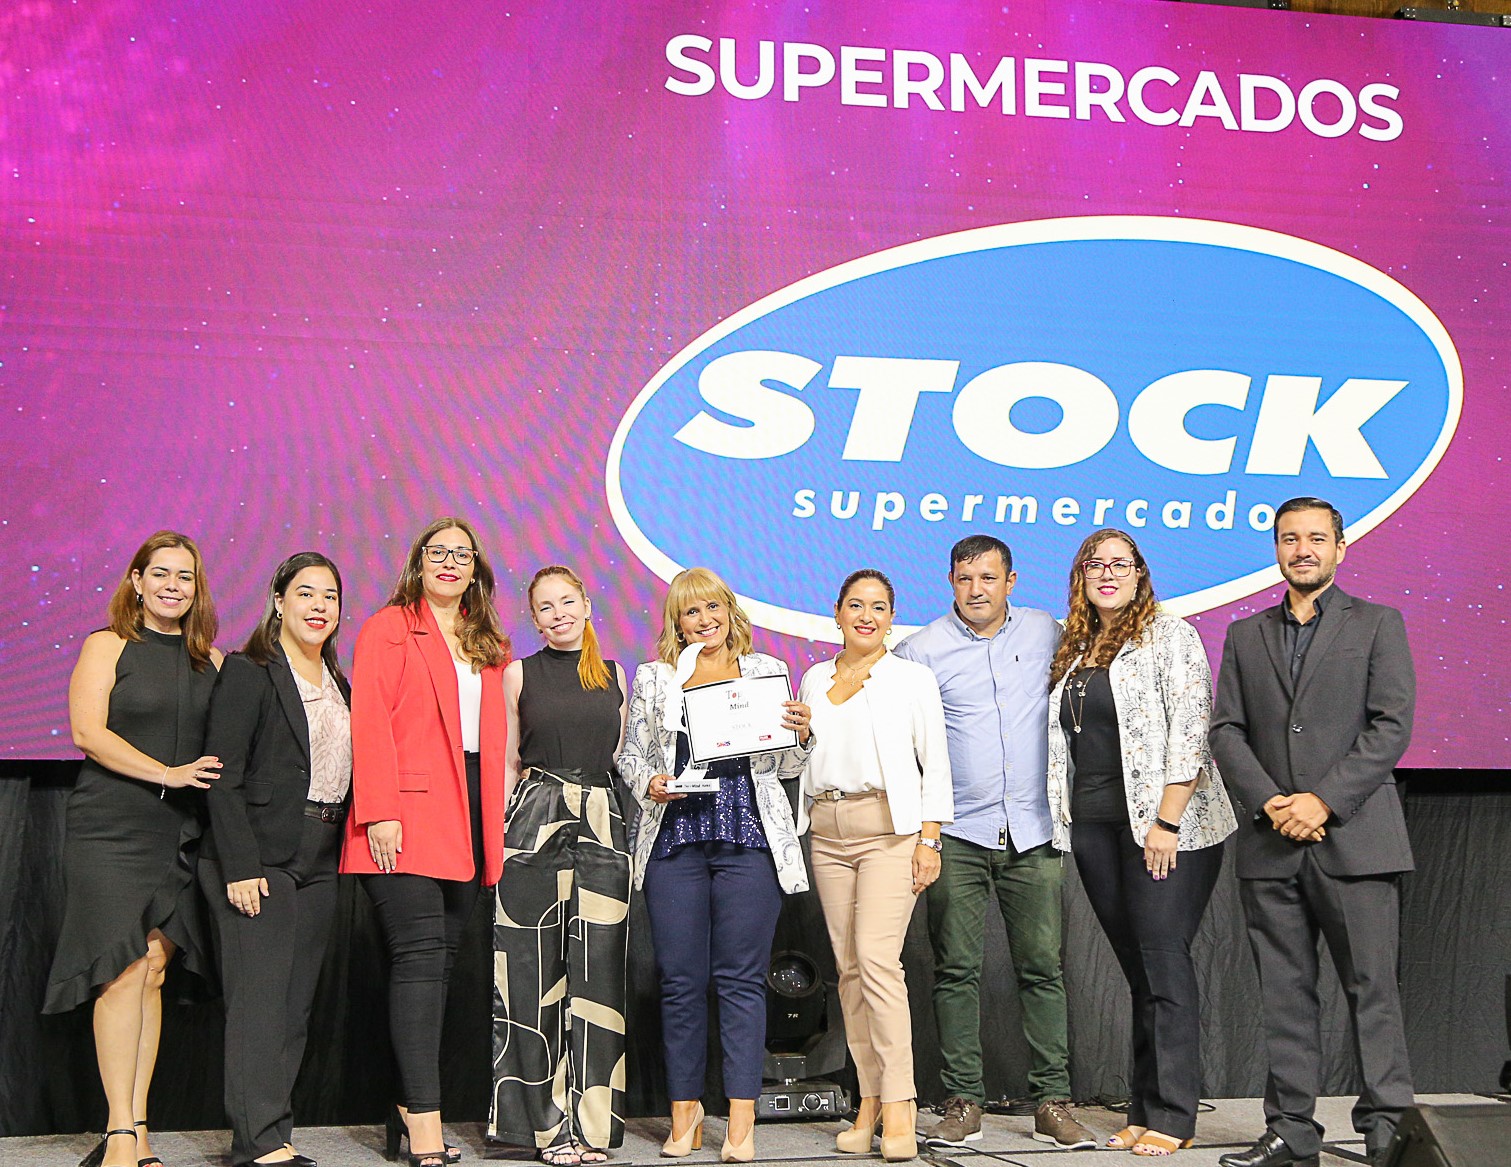 Supermercados Stock es galardonado por decimotercera vez en los premios Top of Mind